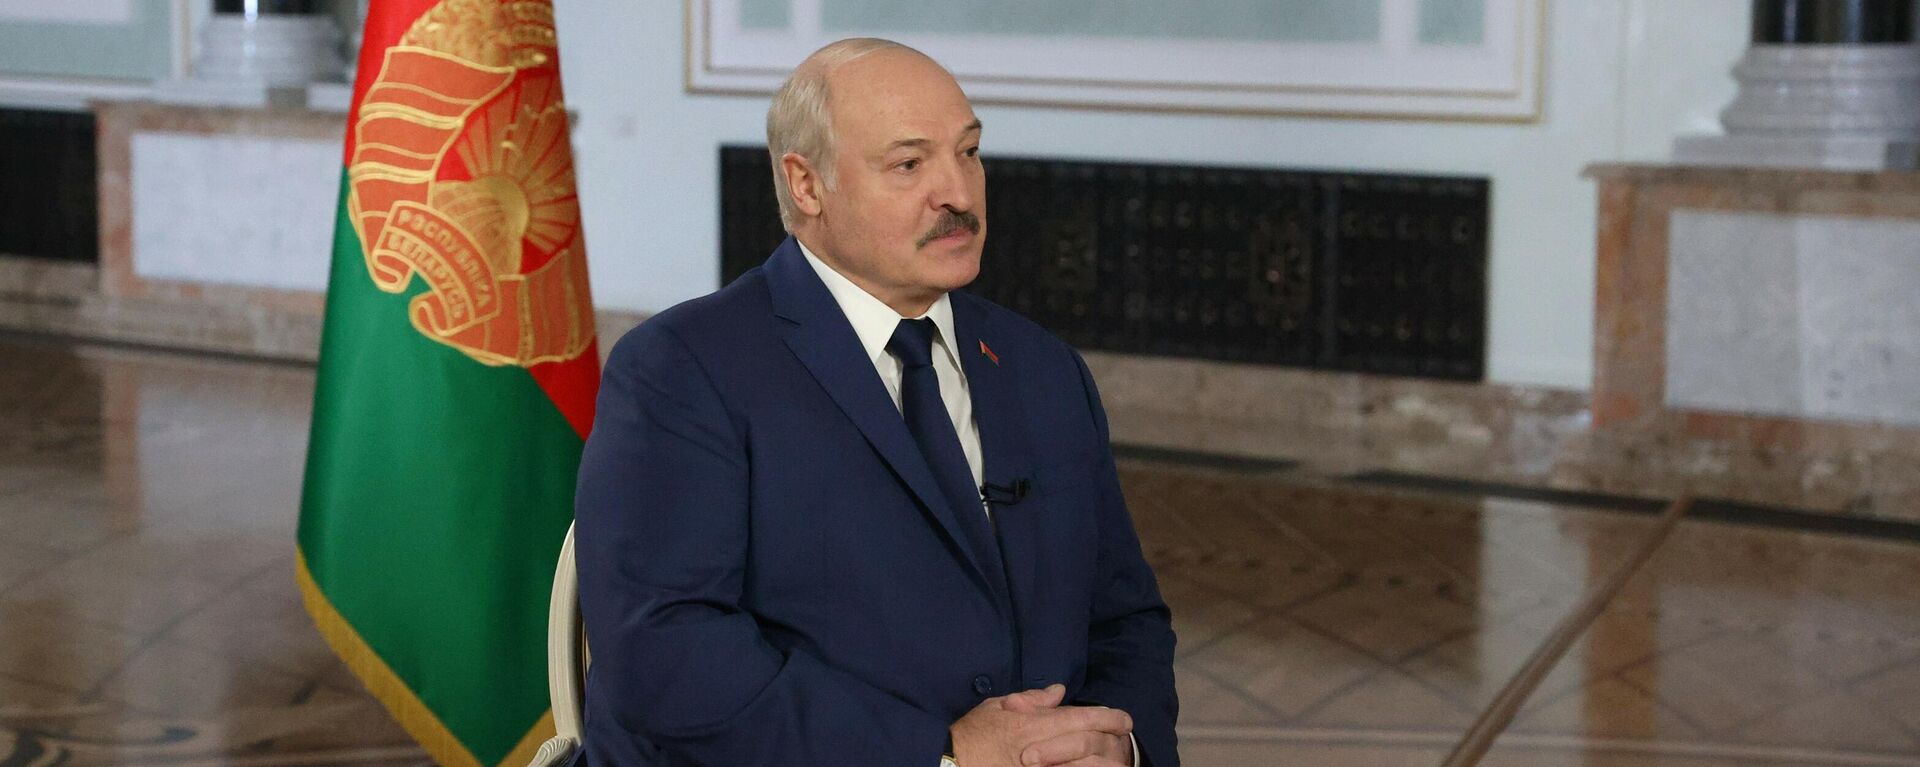 Лукашенко готов разместить в Беларуси российское ядерное оружие - видео - Sputnik Грузия, 1920, 01.12.2021